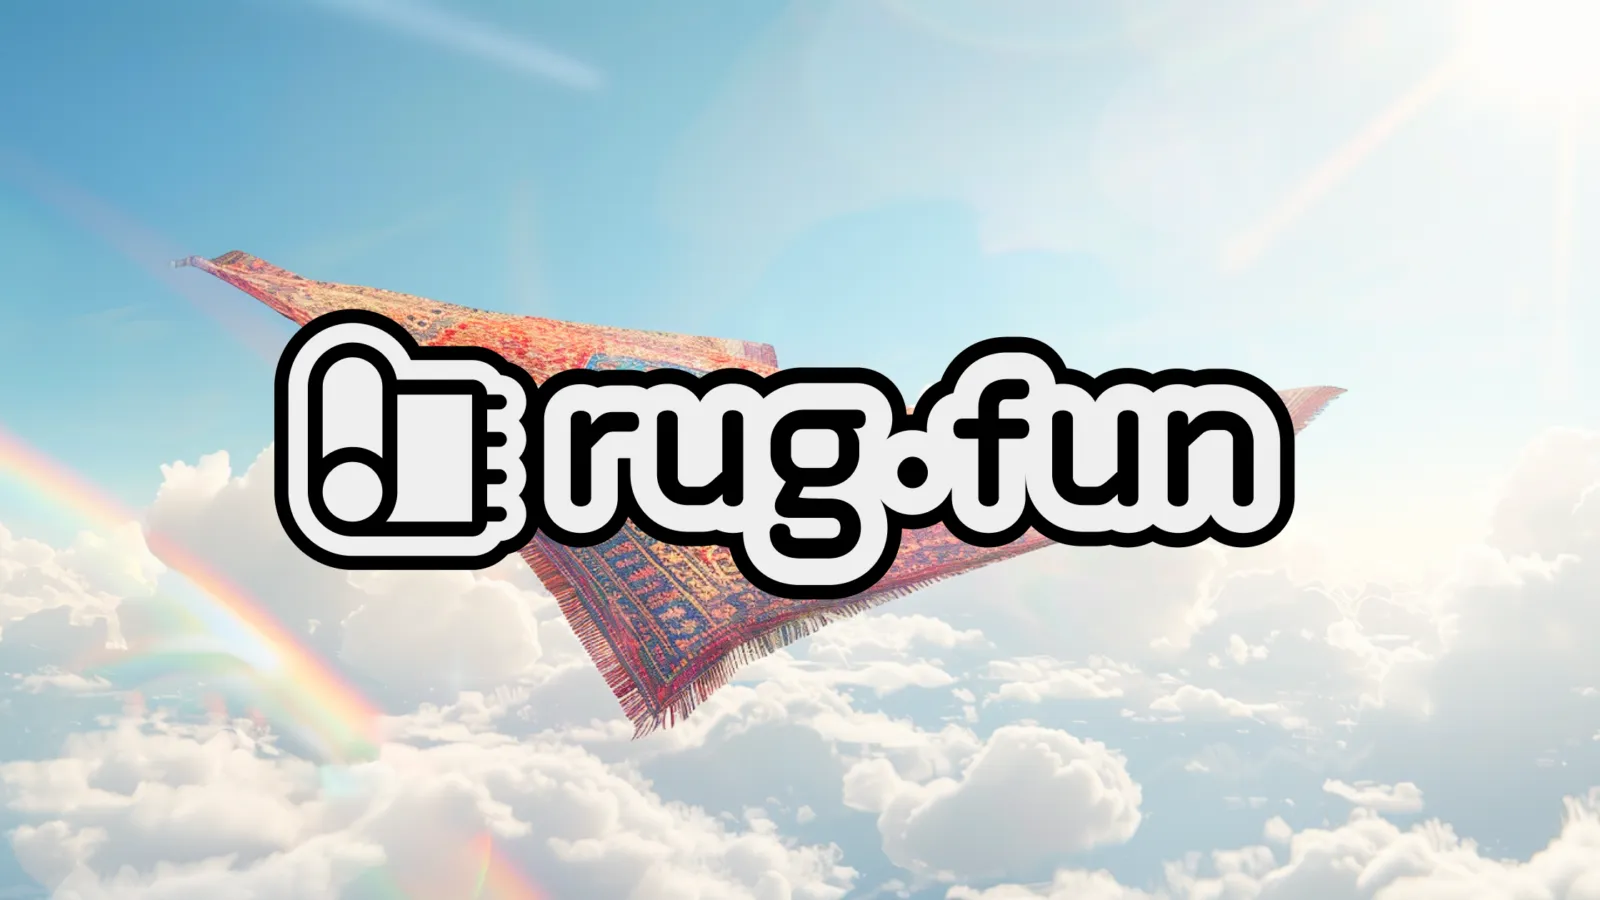 Image: Rug.fun